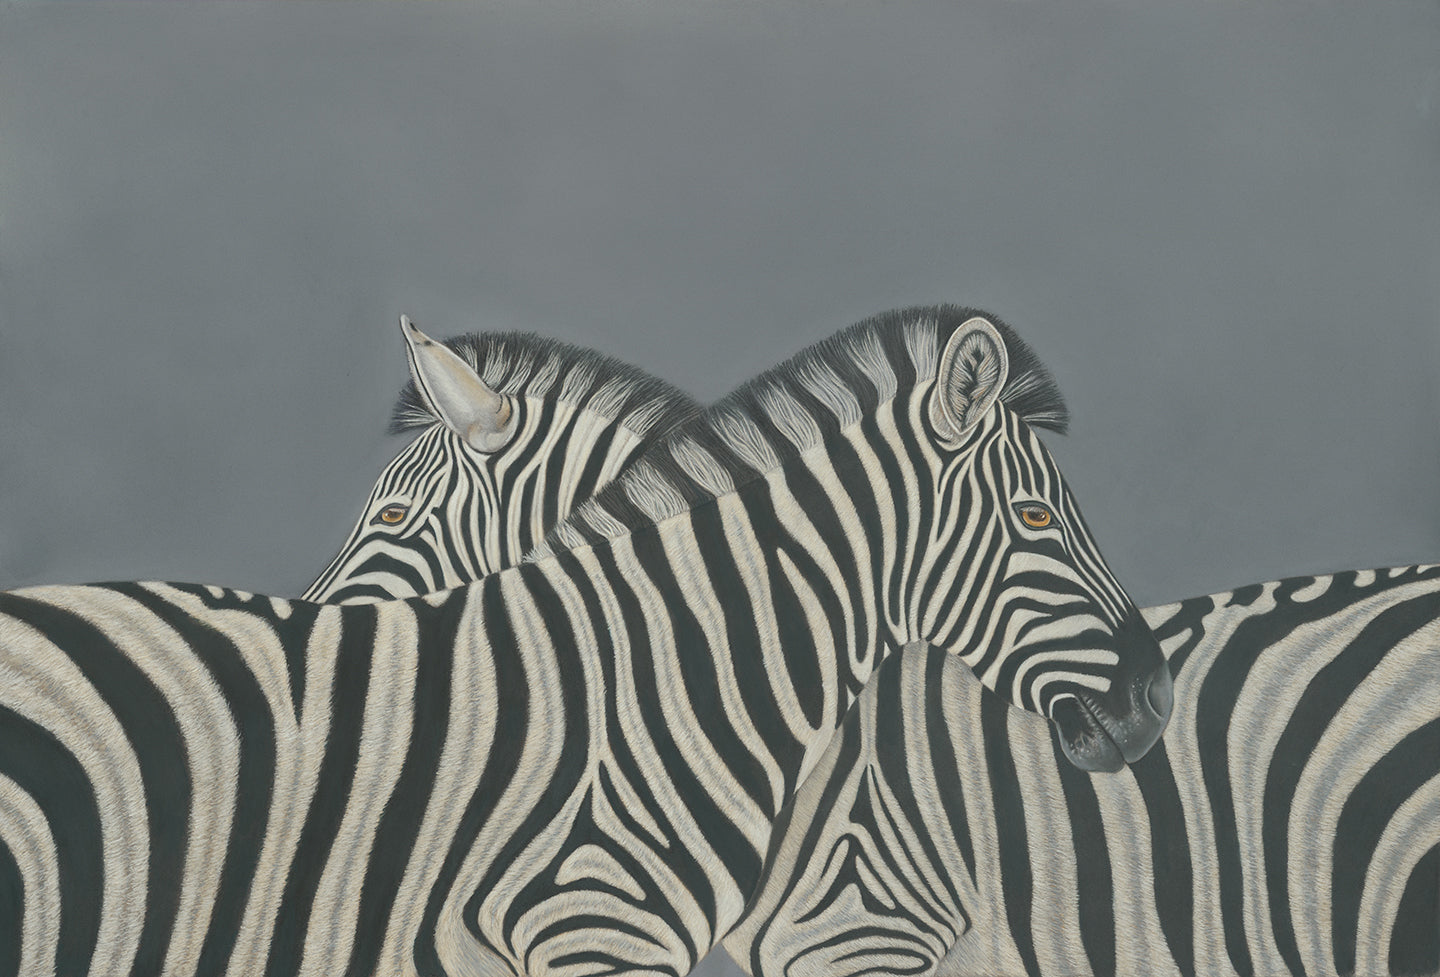 Stripes - Zebras